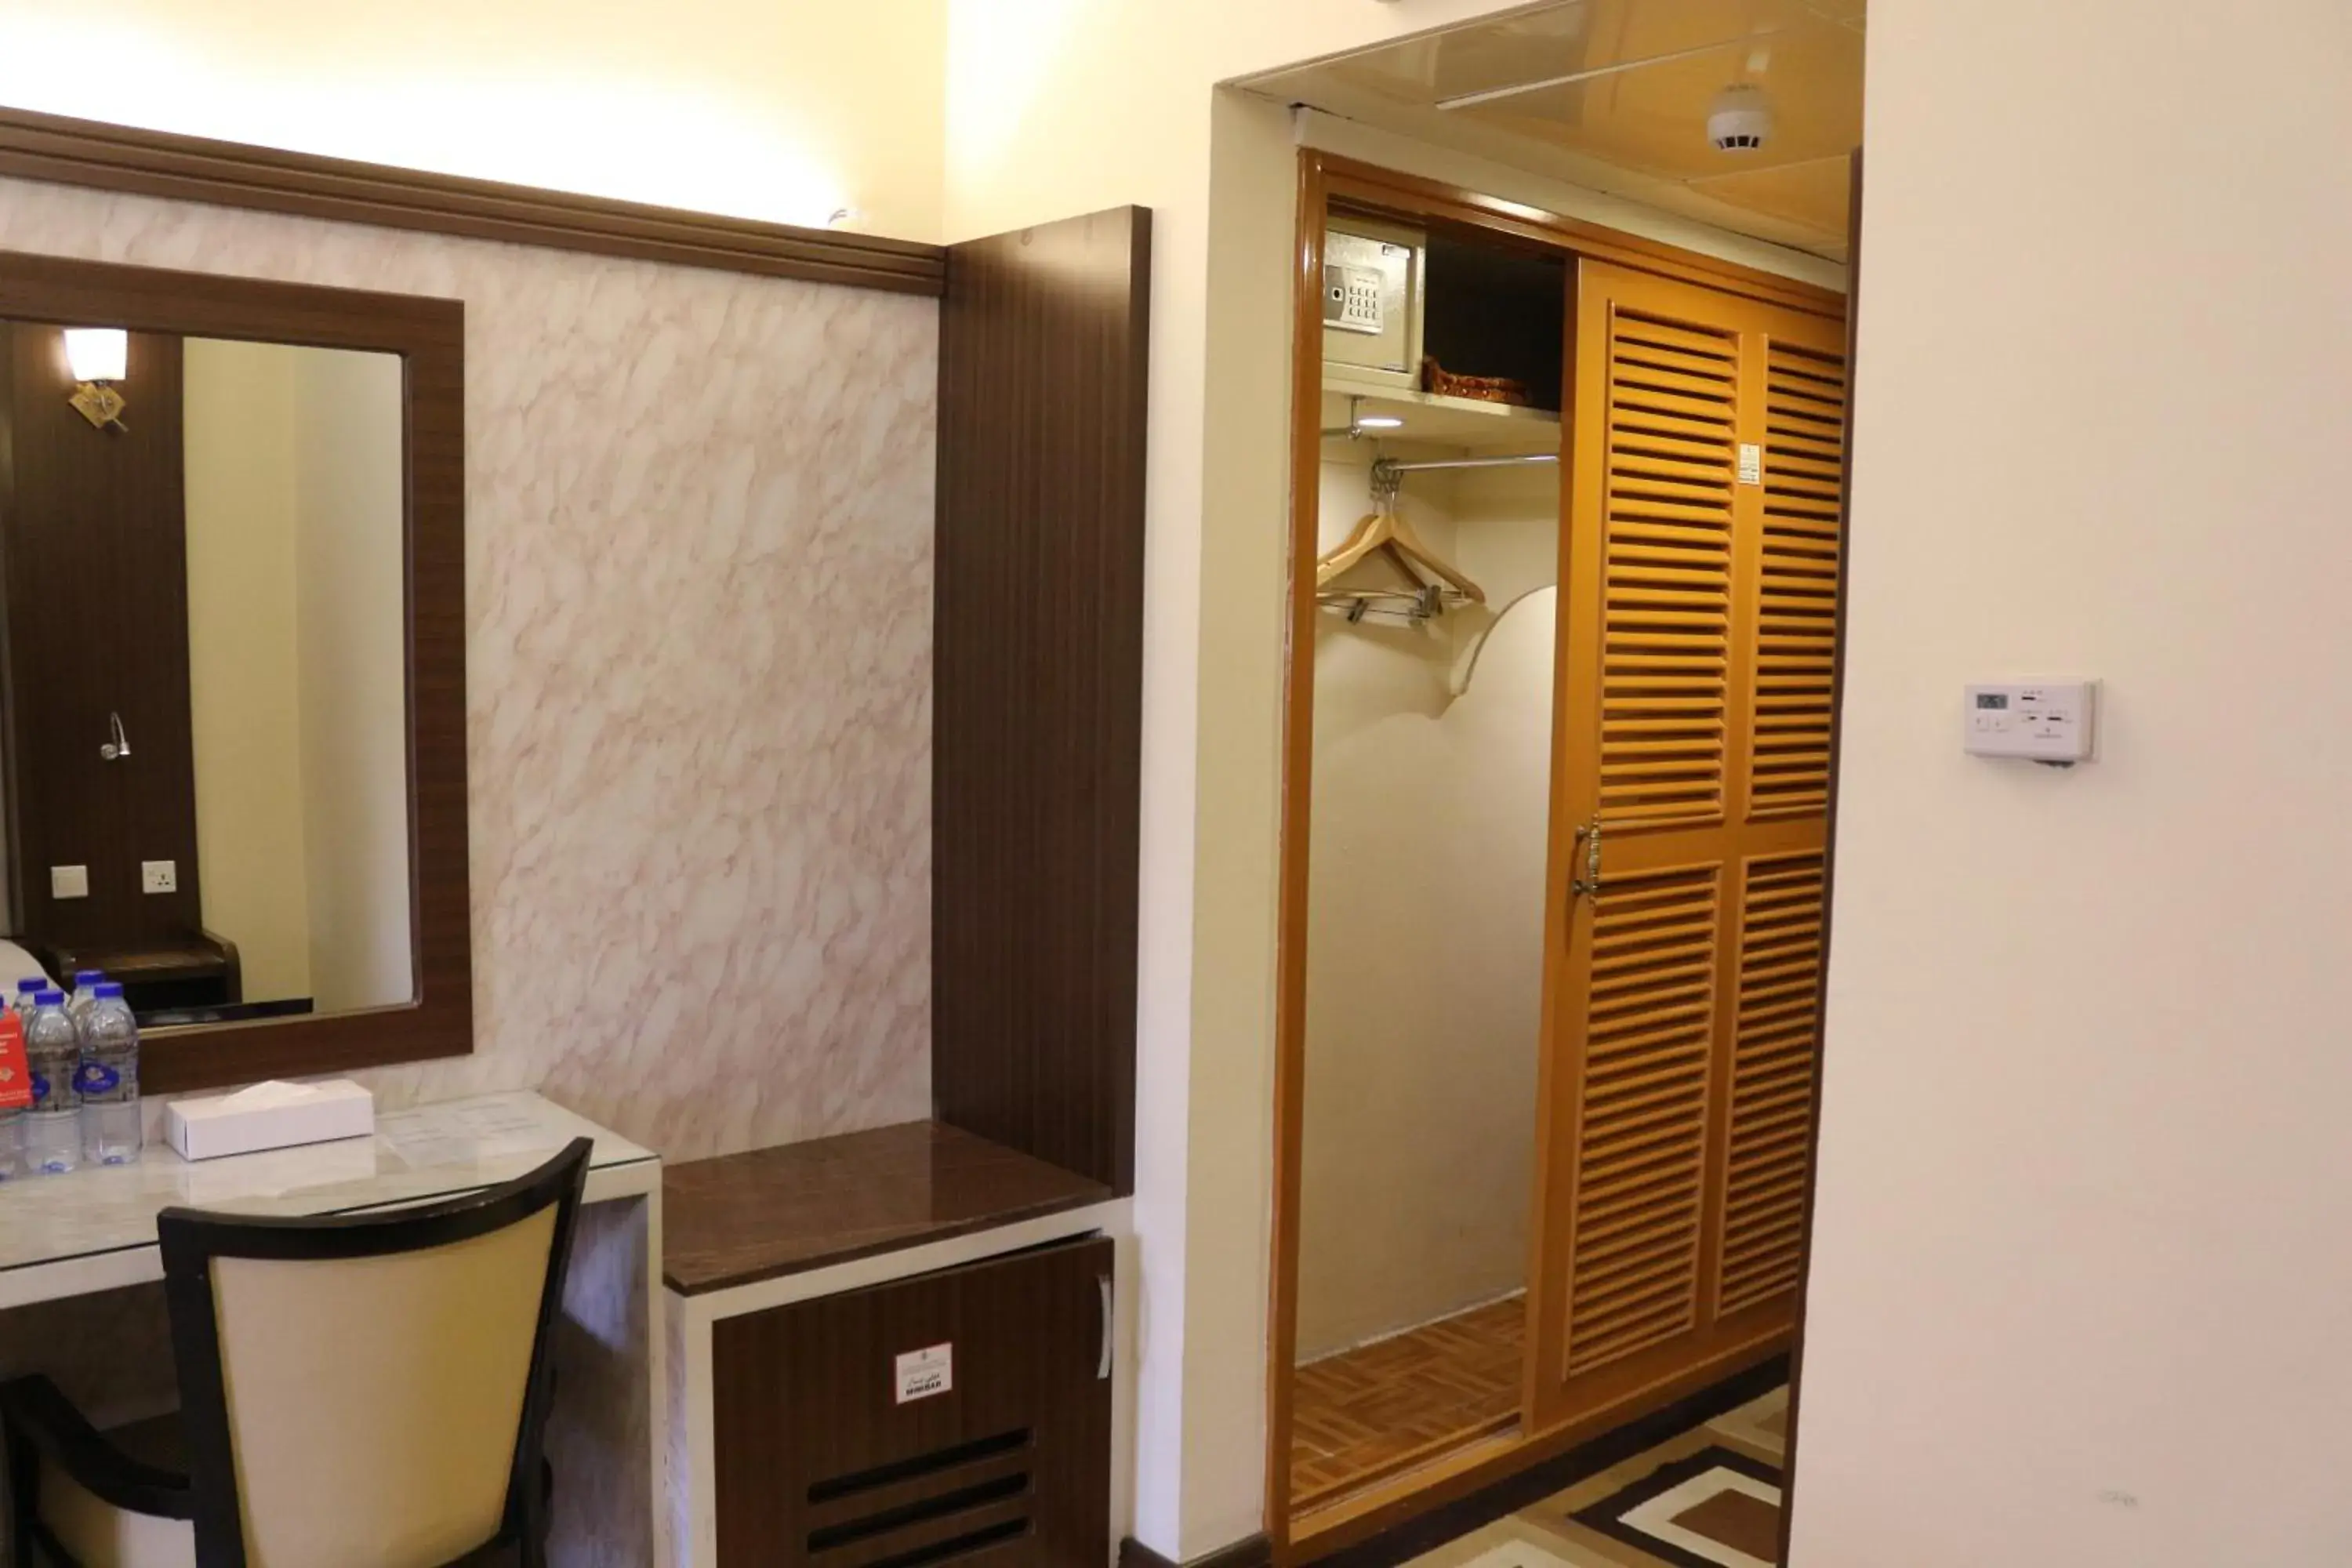 Seating area, Bathroom in Al Khaleej Grand Hotel